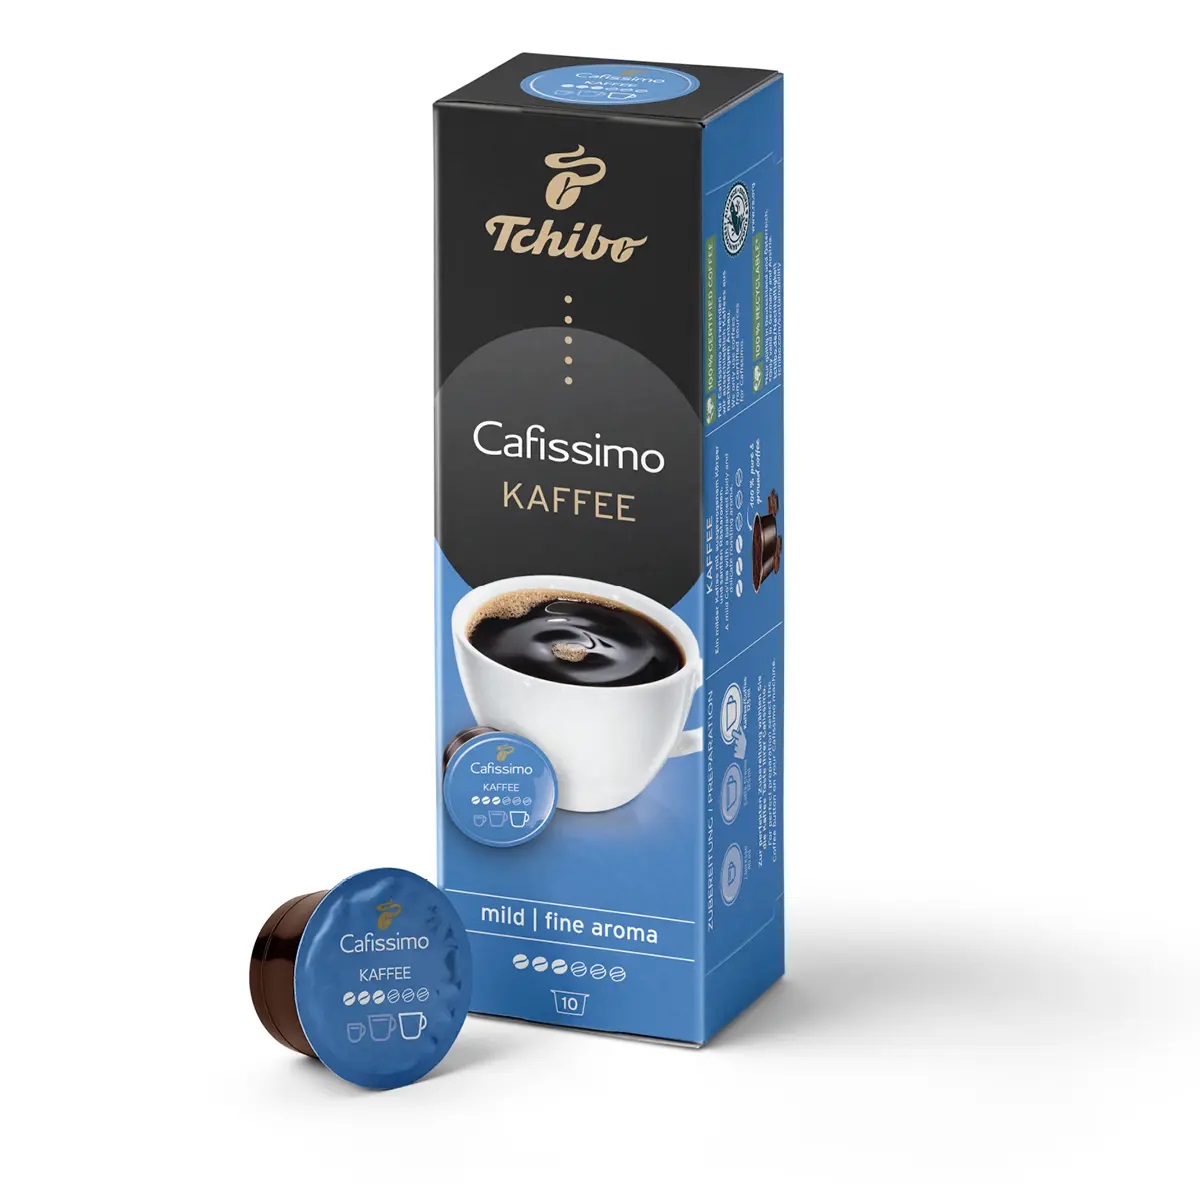 tchibo cafissimo kaffe fine aroma 10 capsule Tchibo Cafissimo Compact Manual